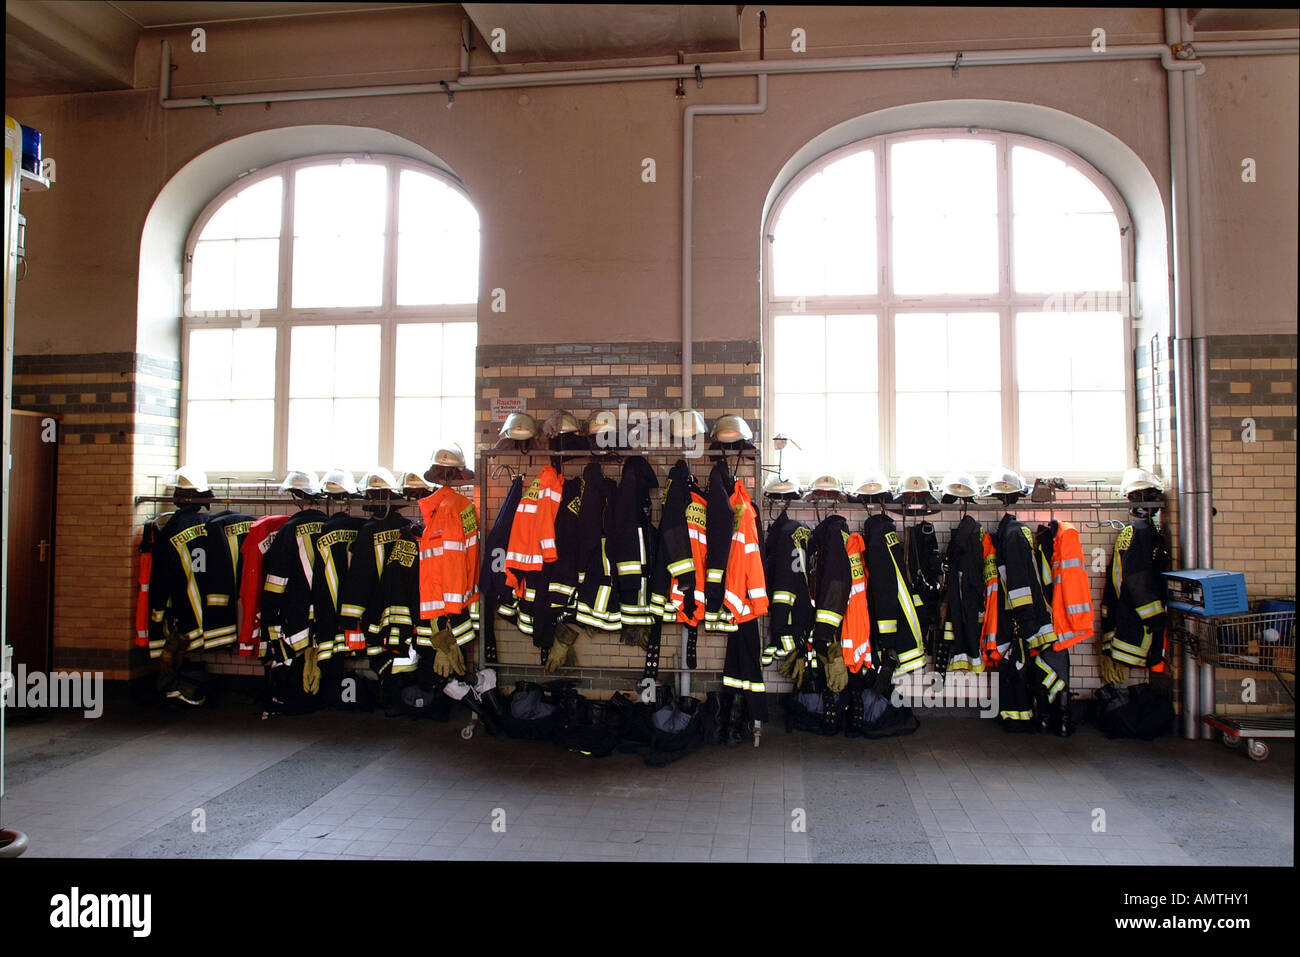 Feuerwehr-Outfits vor Fenstern Stockfoto